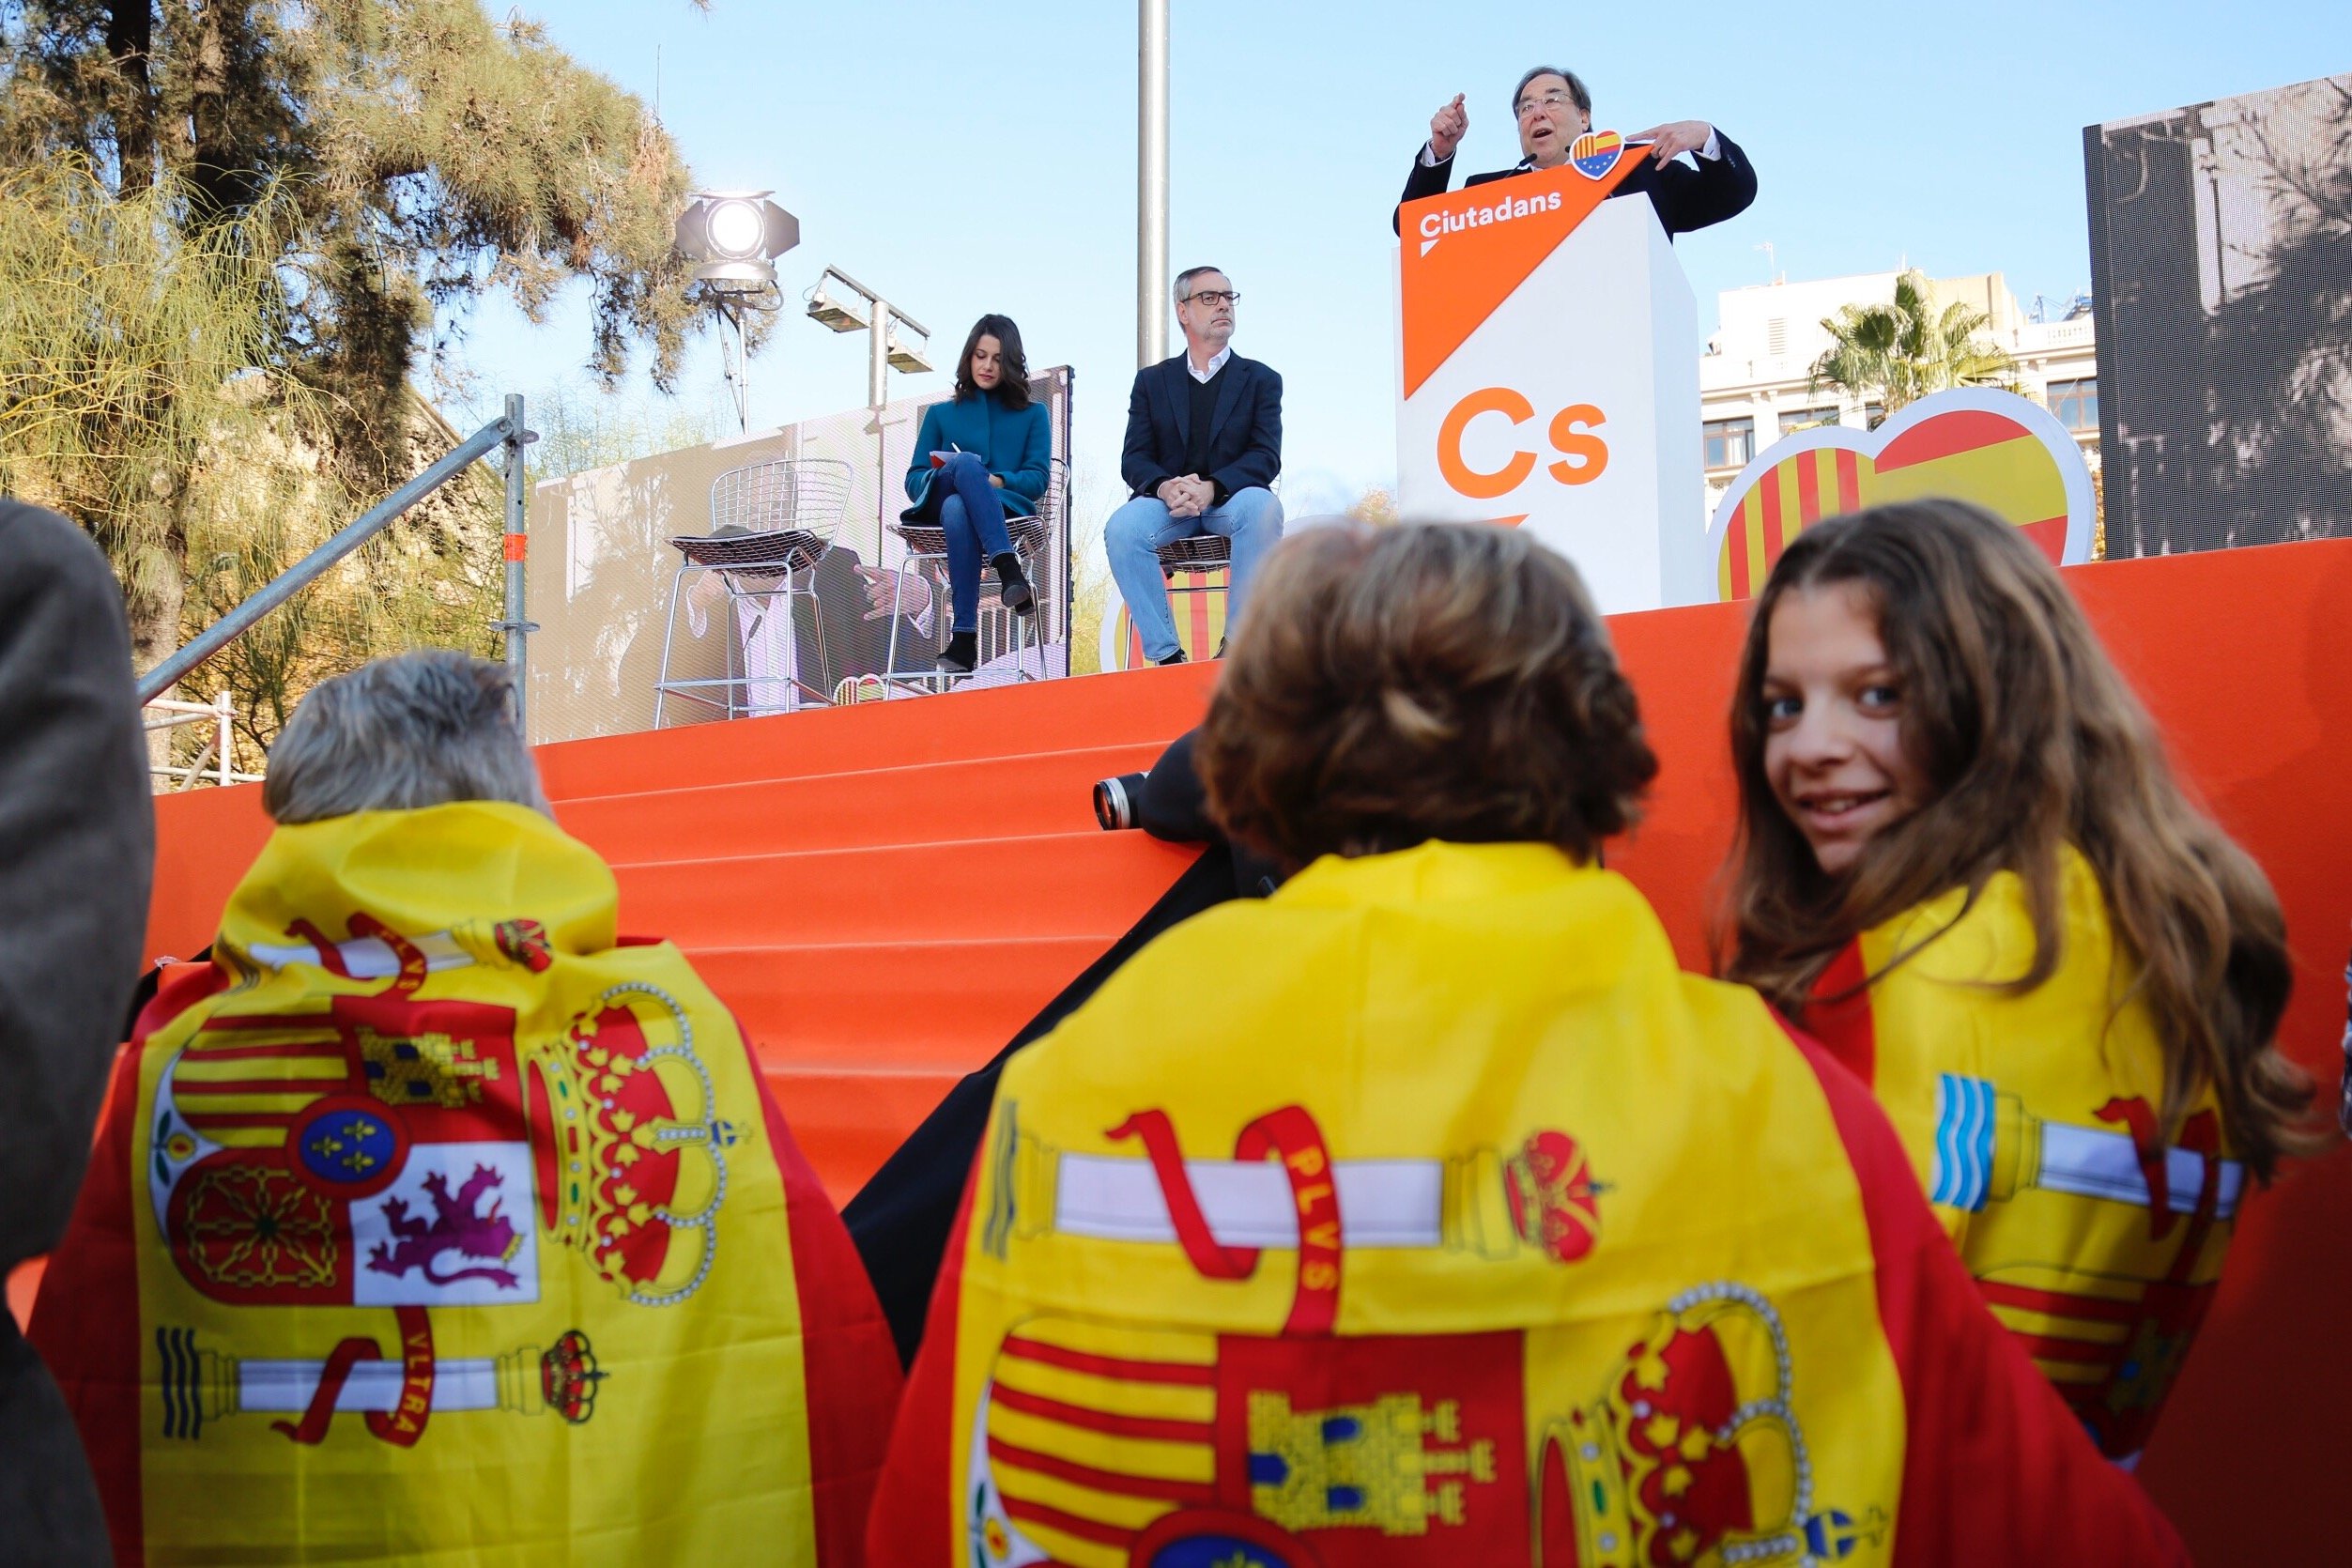 Nace Tercera España, un nuevo intento del centro españolista después de los fracasos de Cs y UPyD